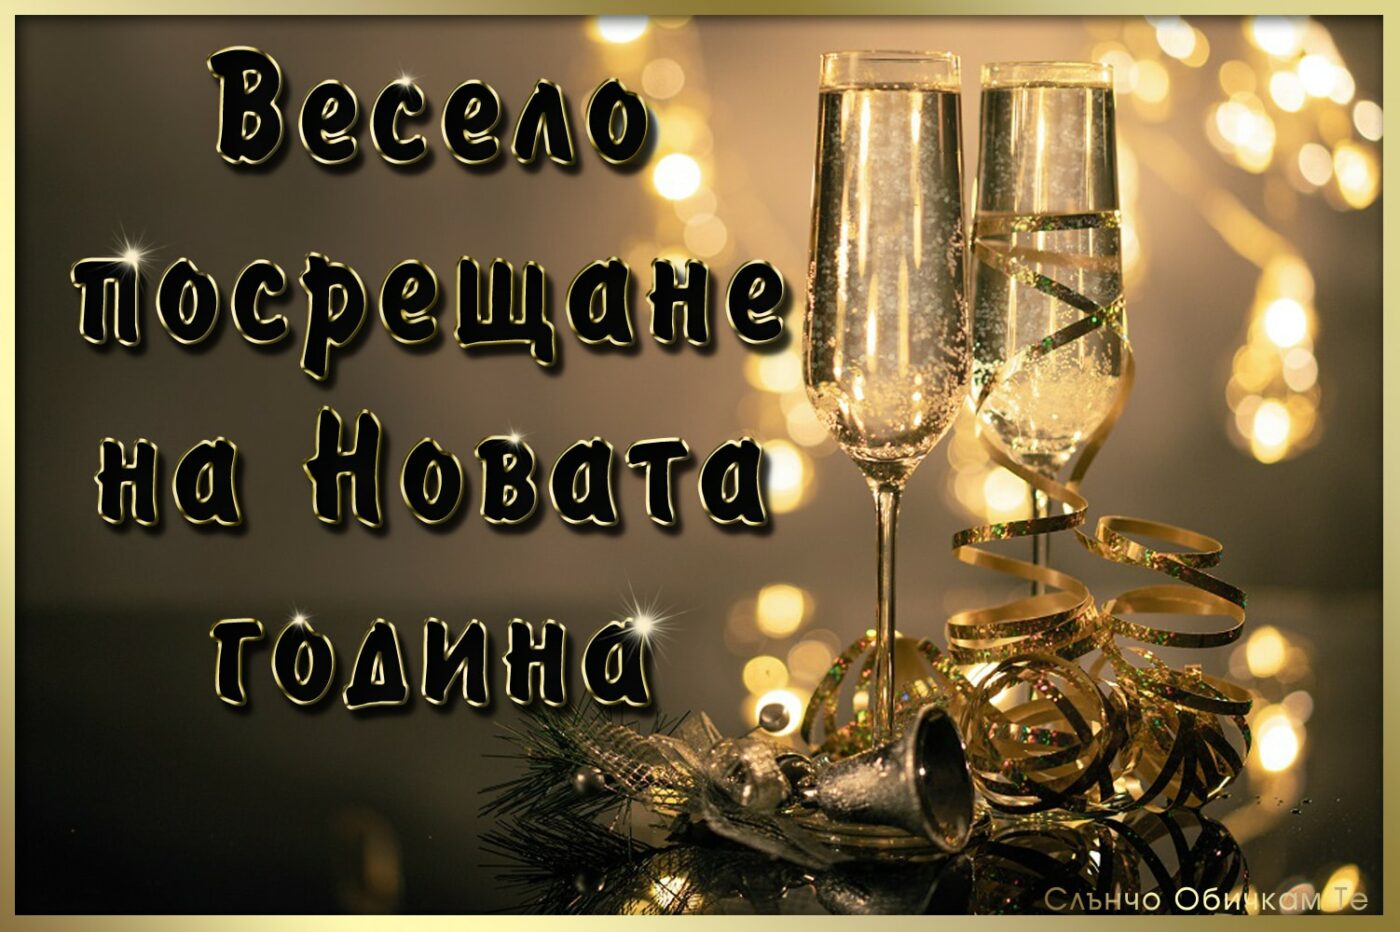 Весело посрещане на новата година, честита нова година, за много години, картички за нова година, пожелания за нова година